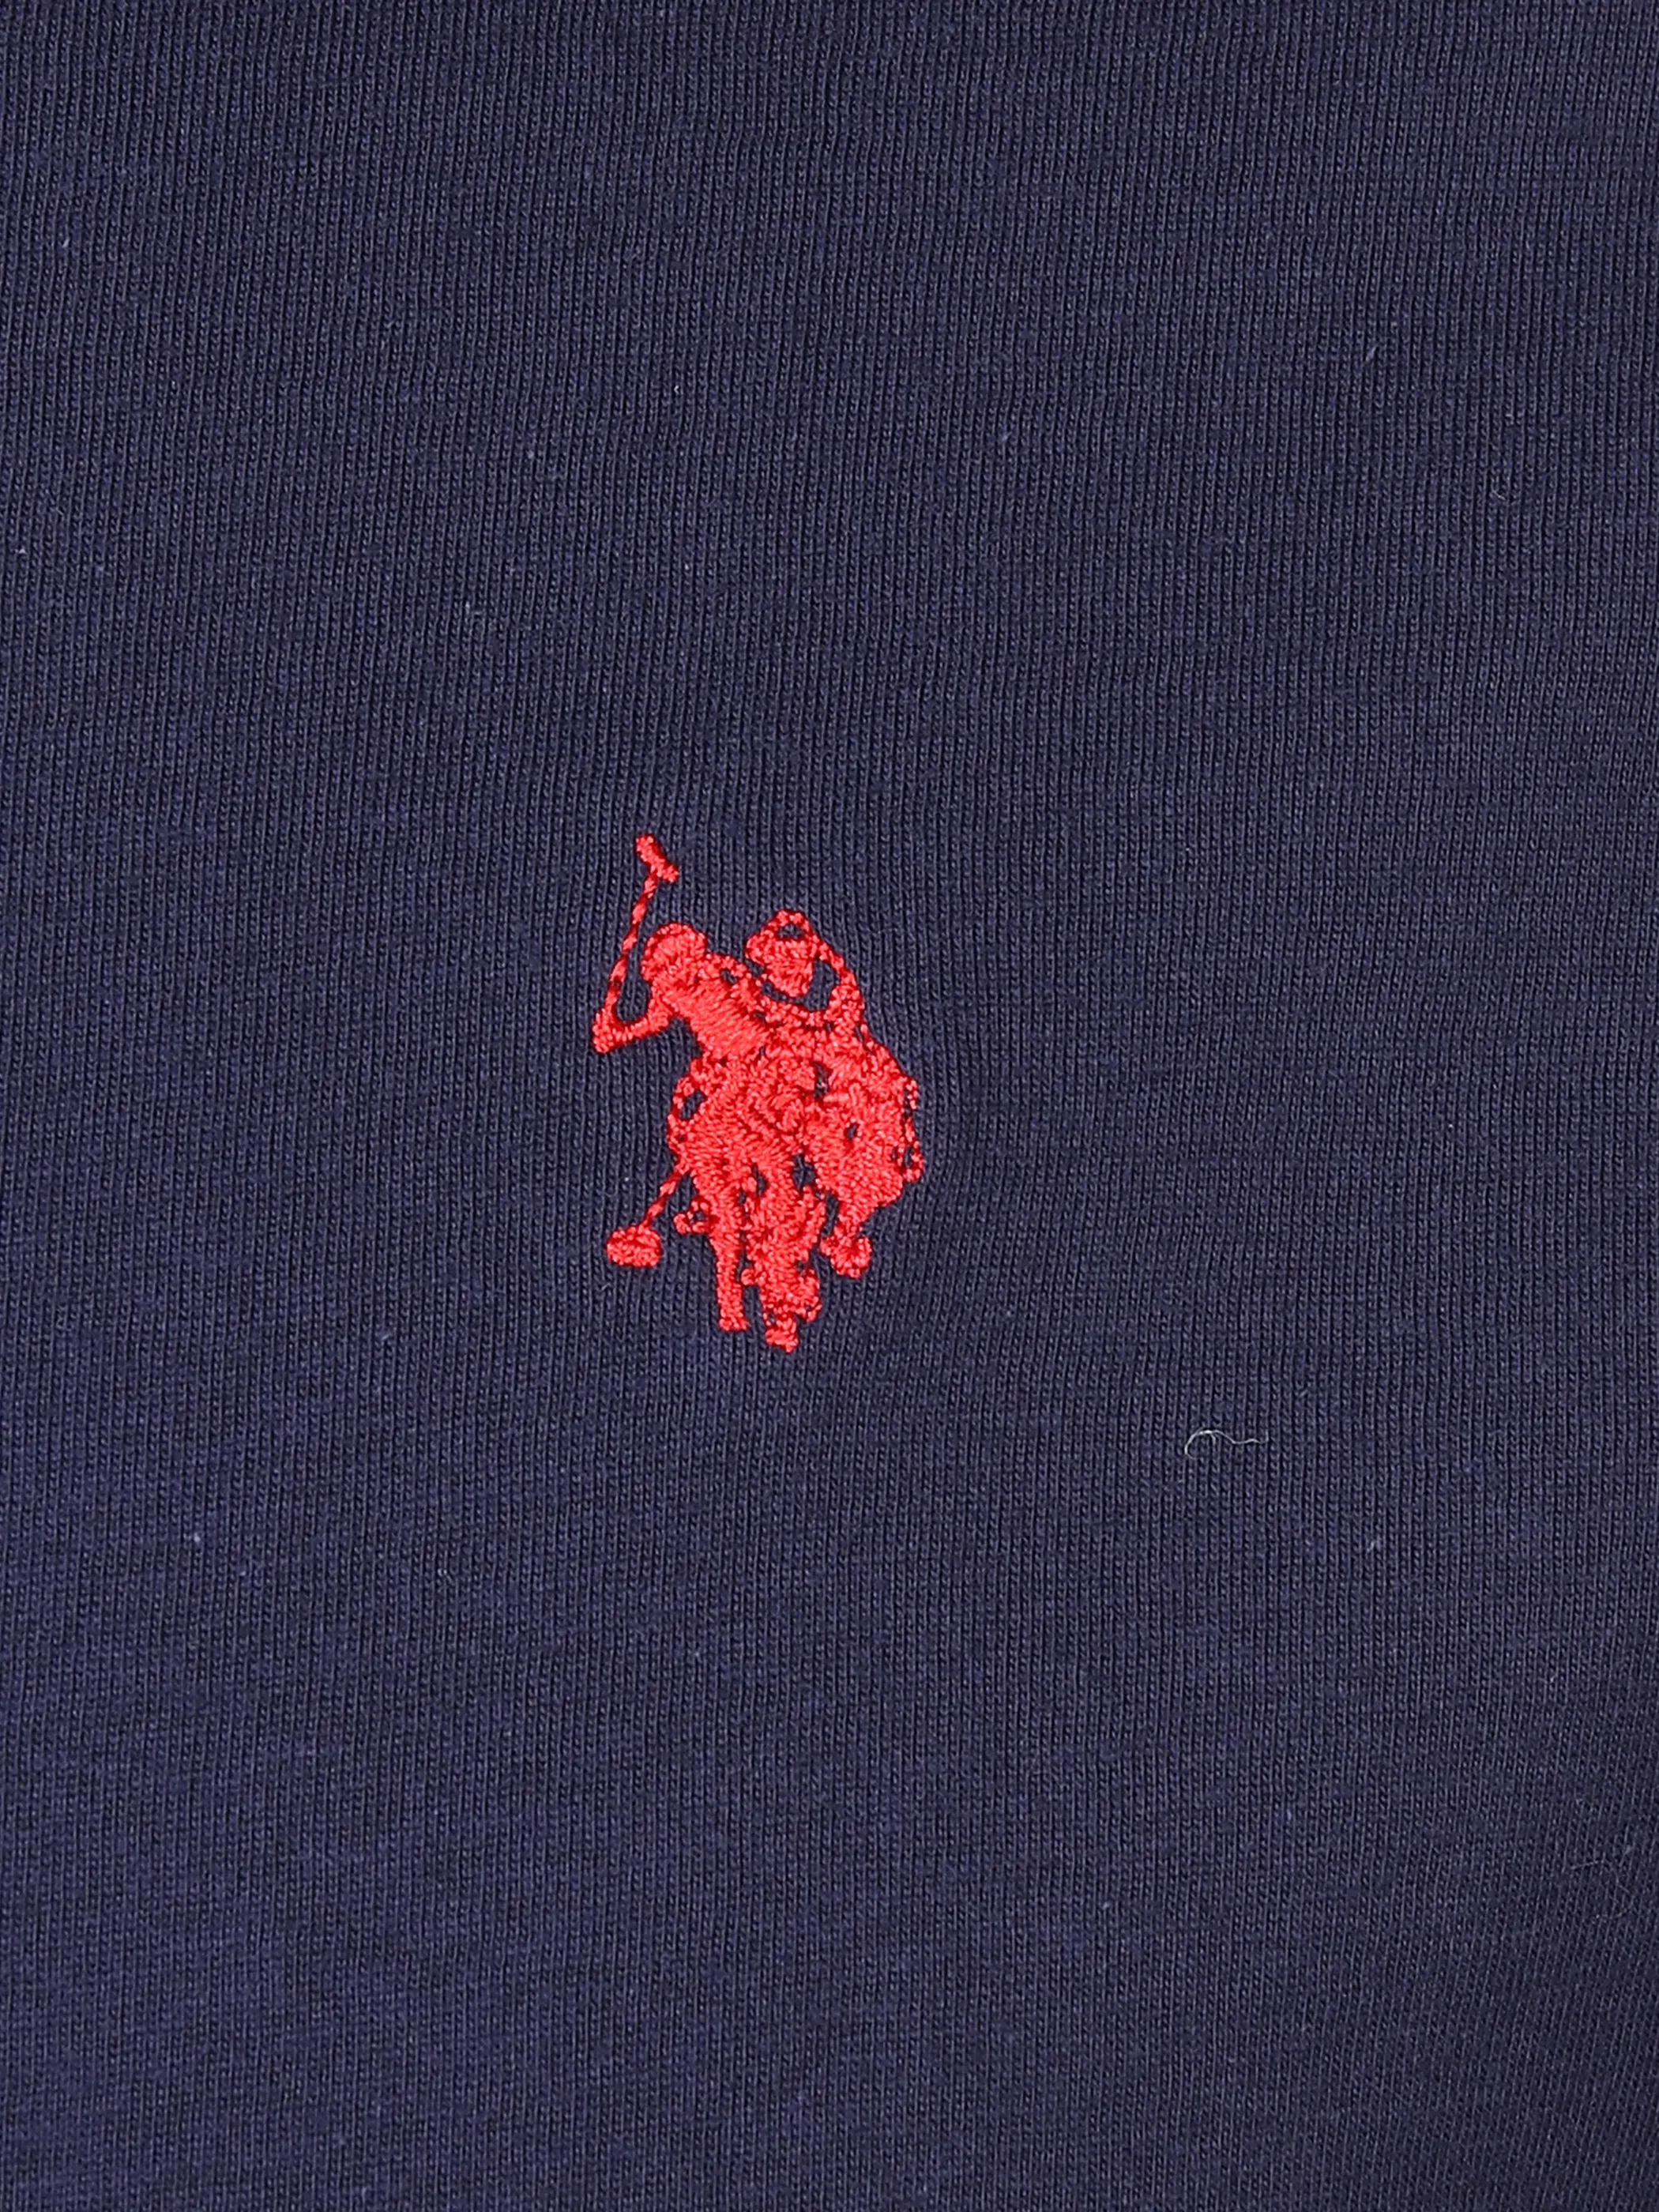 U.S. Polo Assn. He. T-Shirt 1/2 Arm Logostickerei Marine 882065 NAVY 3